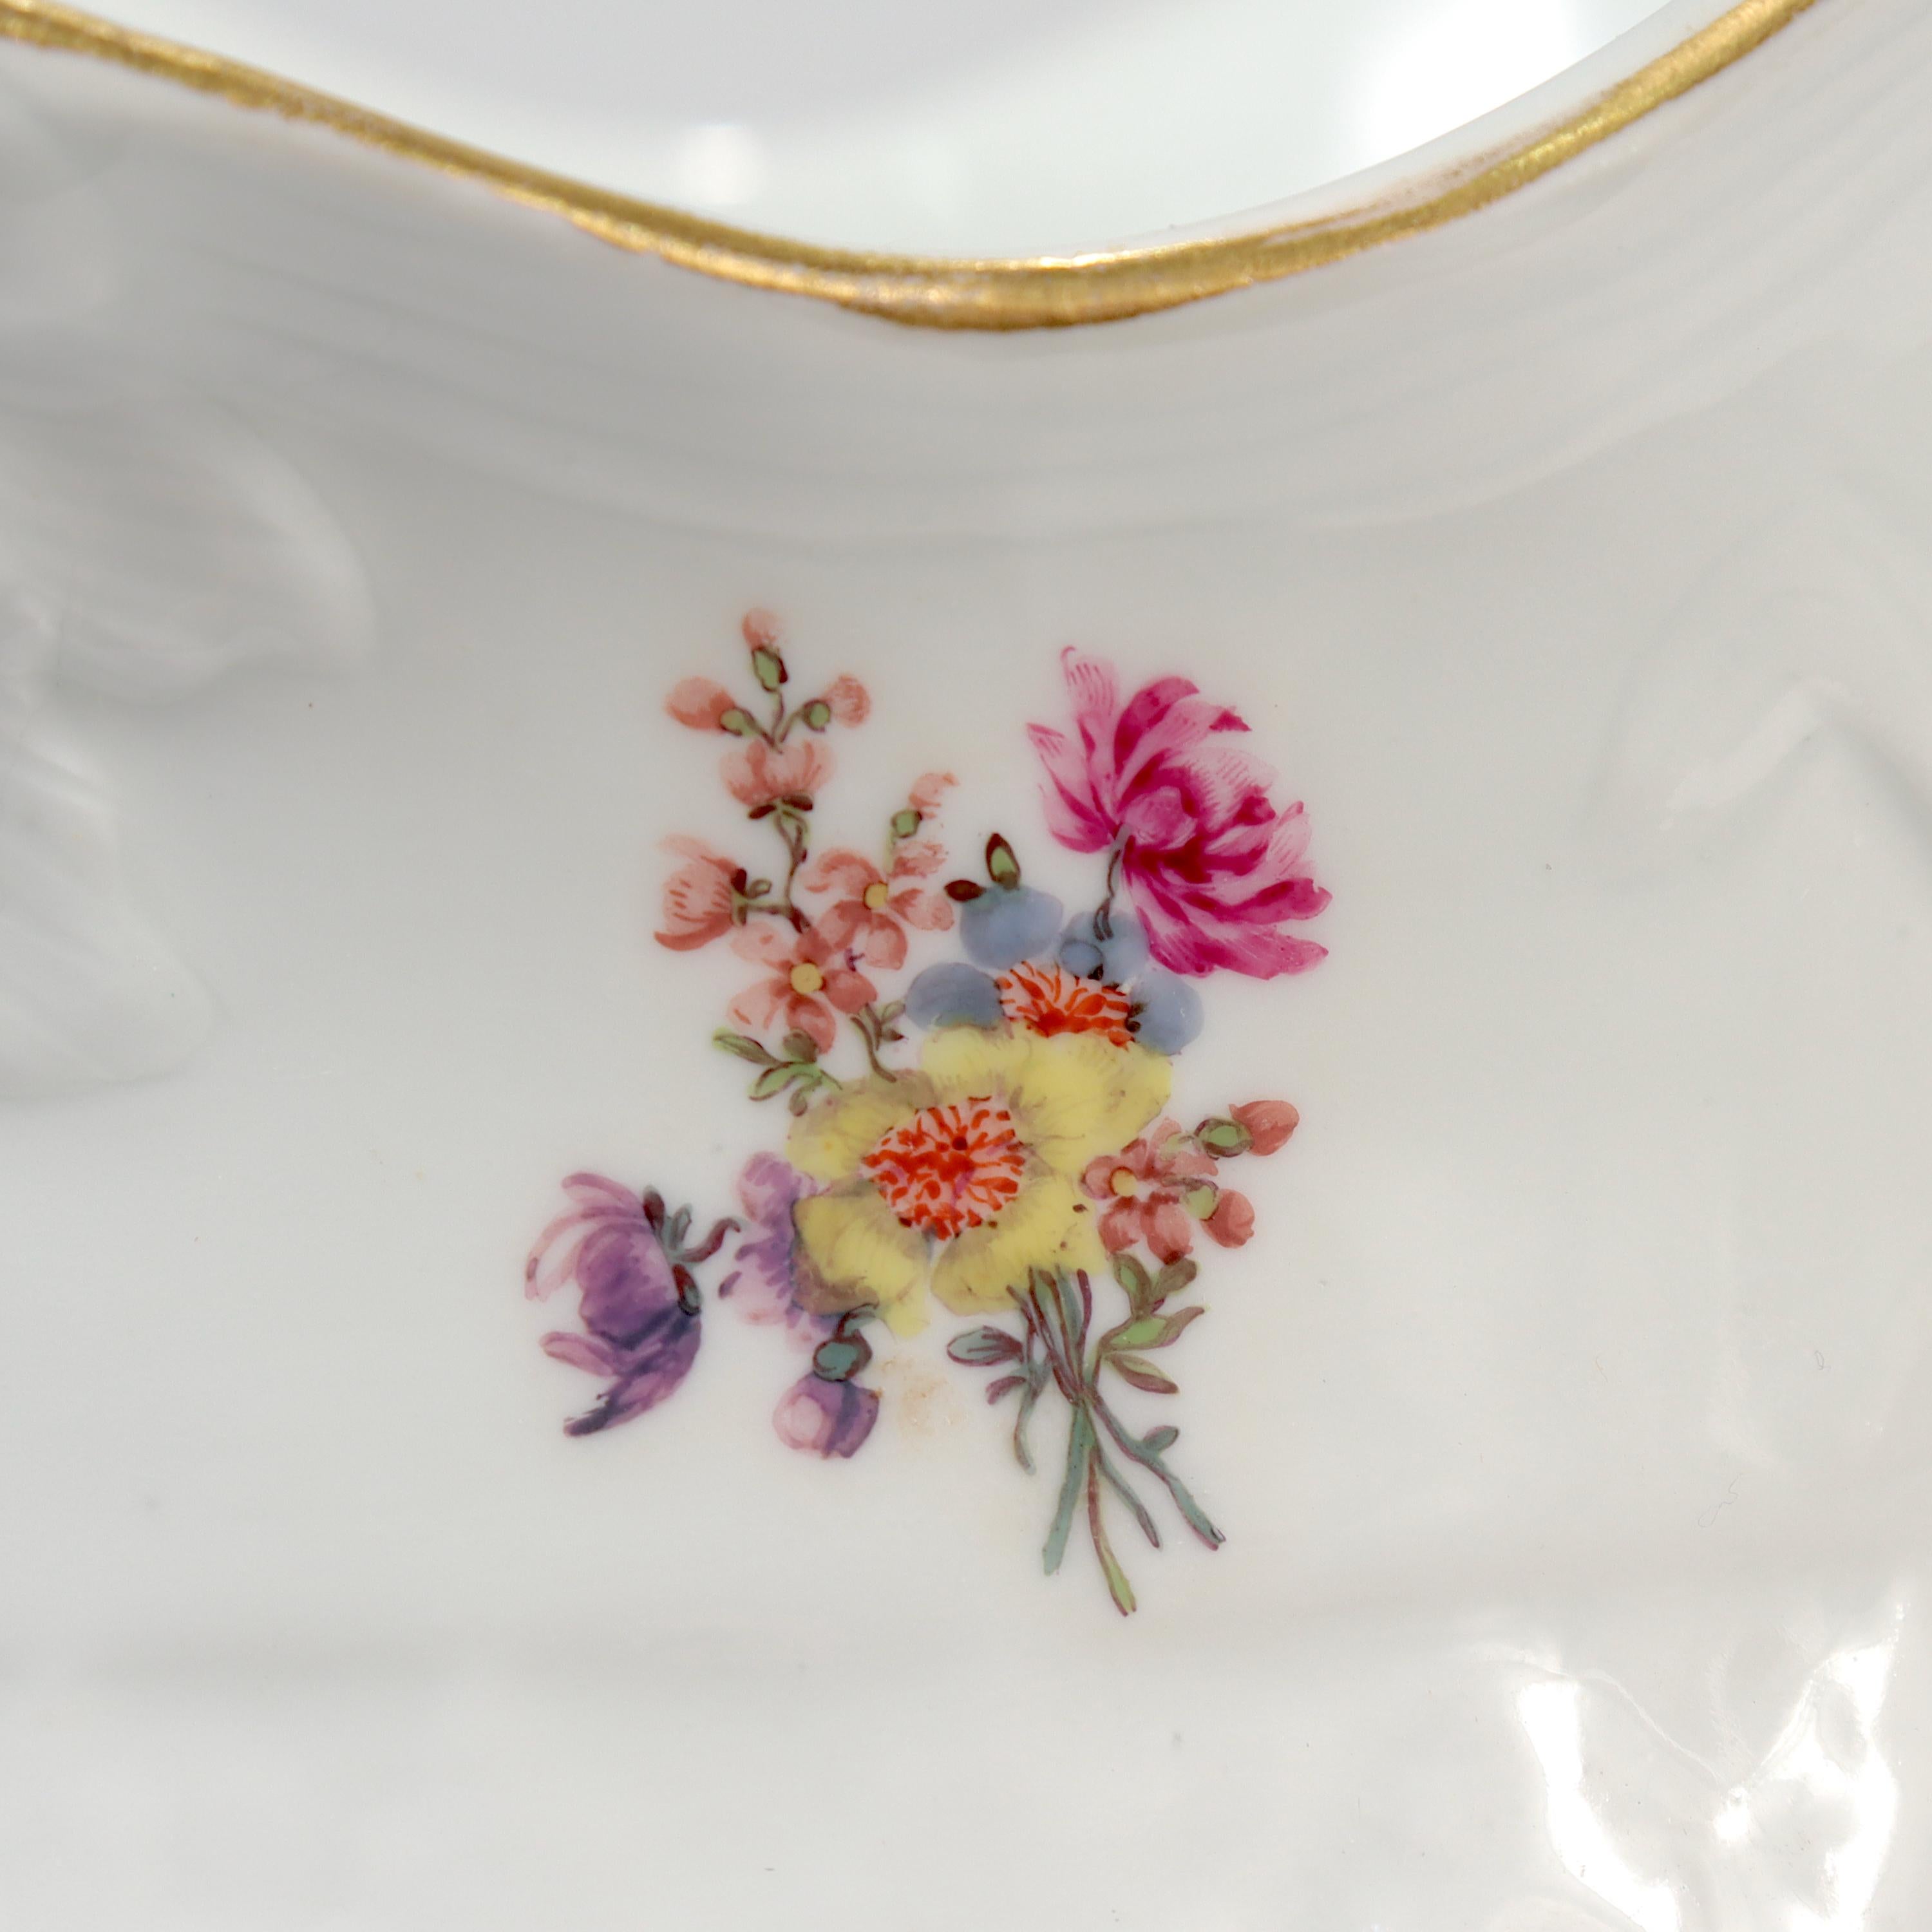 Pair of Antique 18th / 19th Century Meissen Porcelain Cachepots or Flower Pots For Sale 3